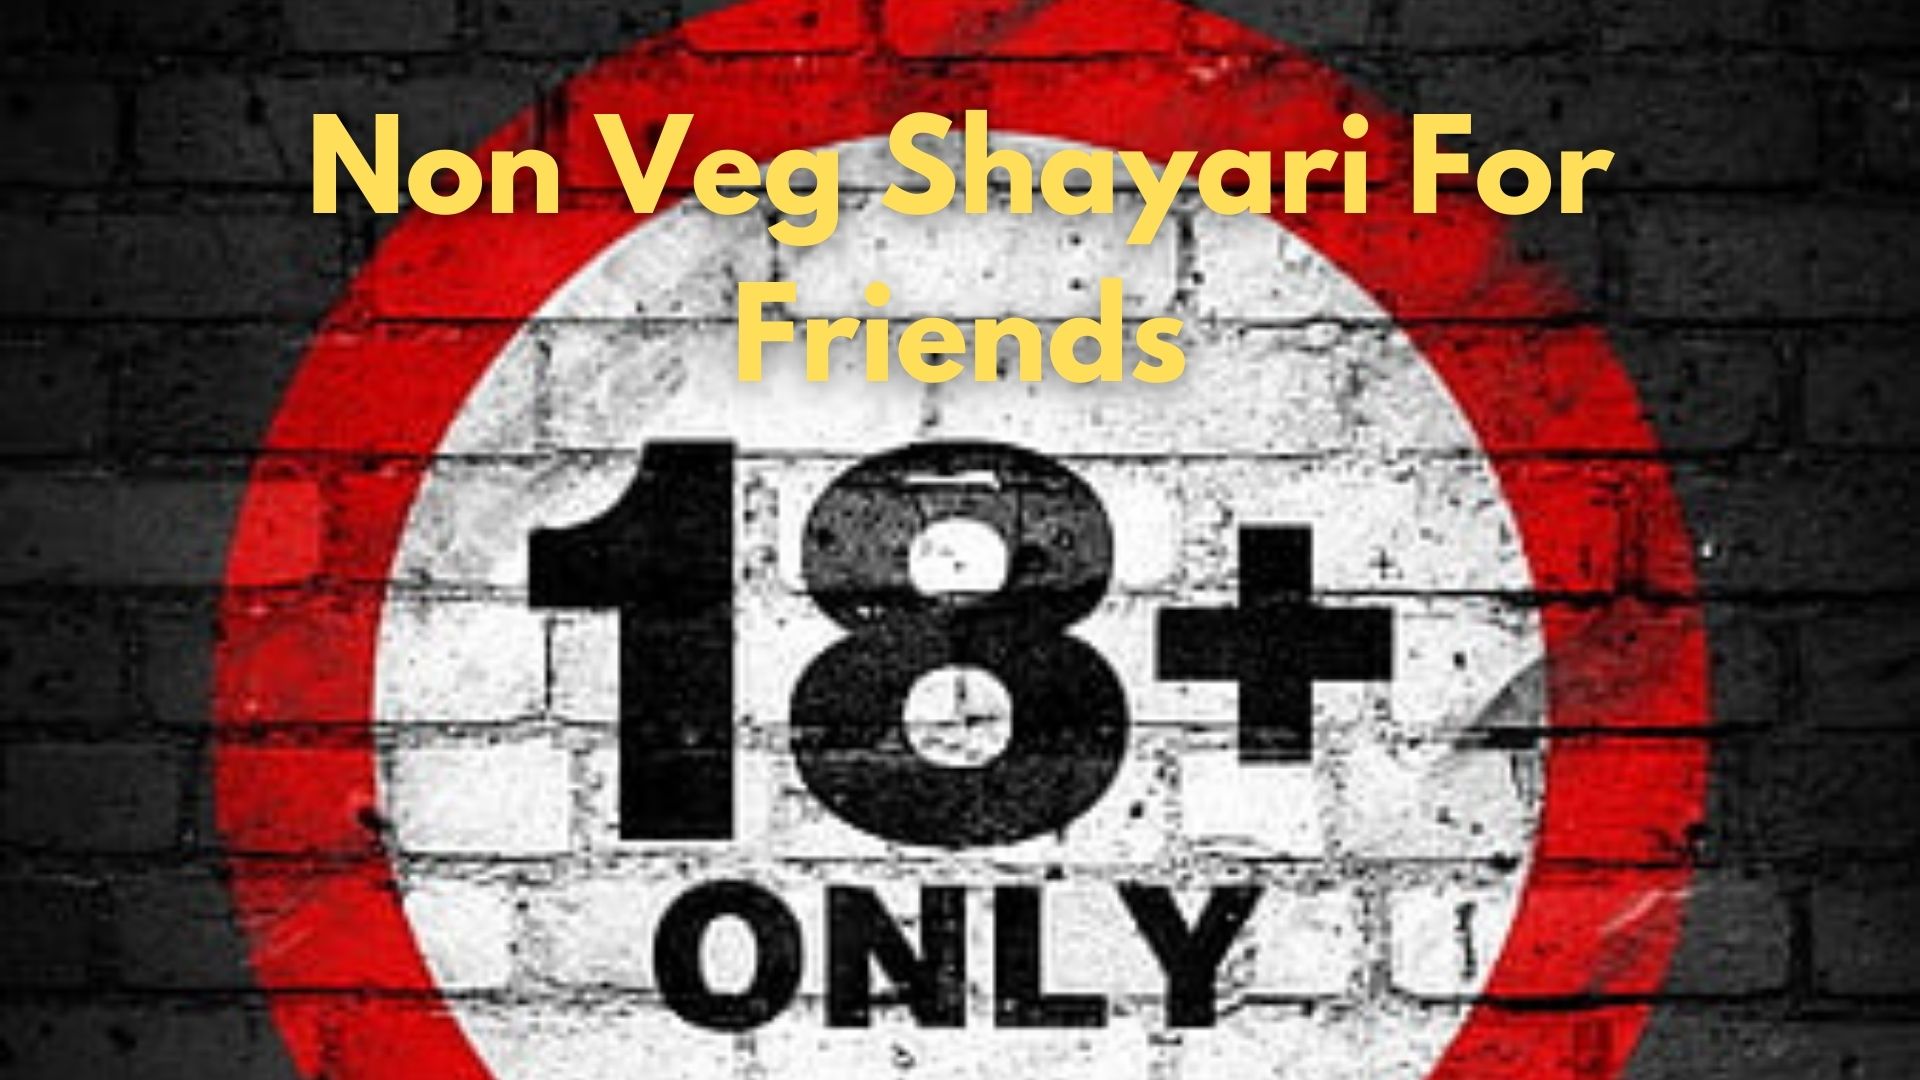 18+ Shayari For Friends 2022 | Best Non Veg Shayari For Friends